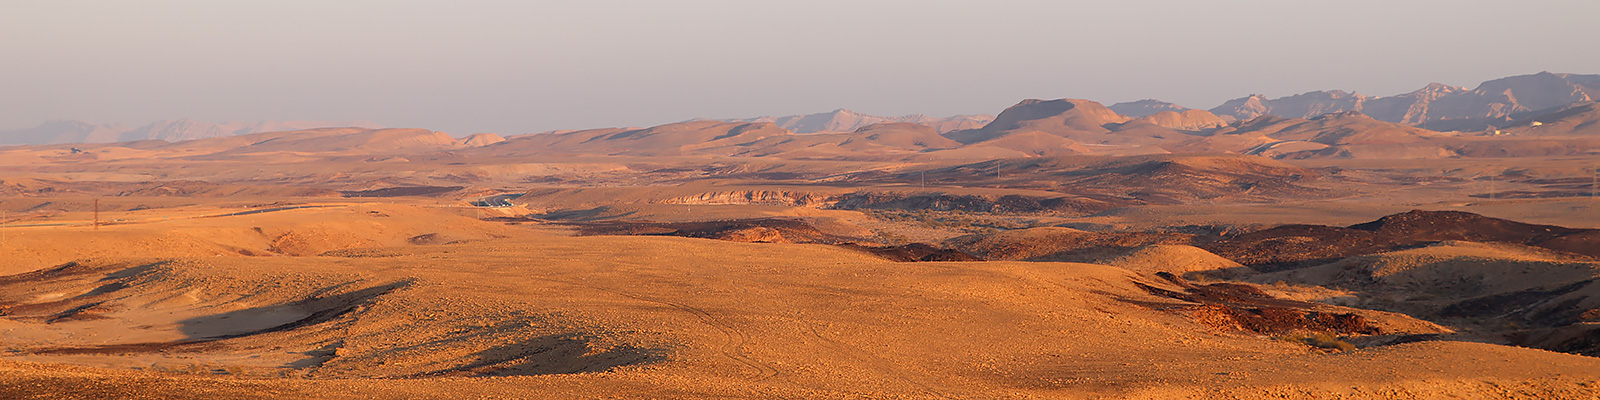 イスラエル南部の砂漠地帯ネゲブ